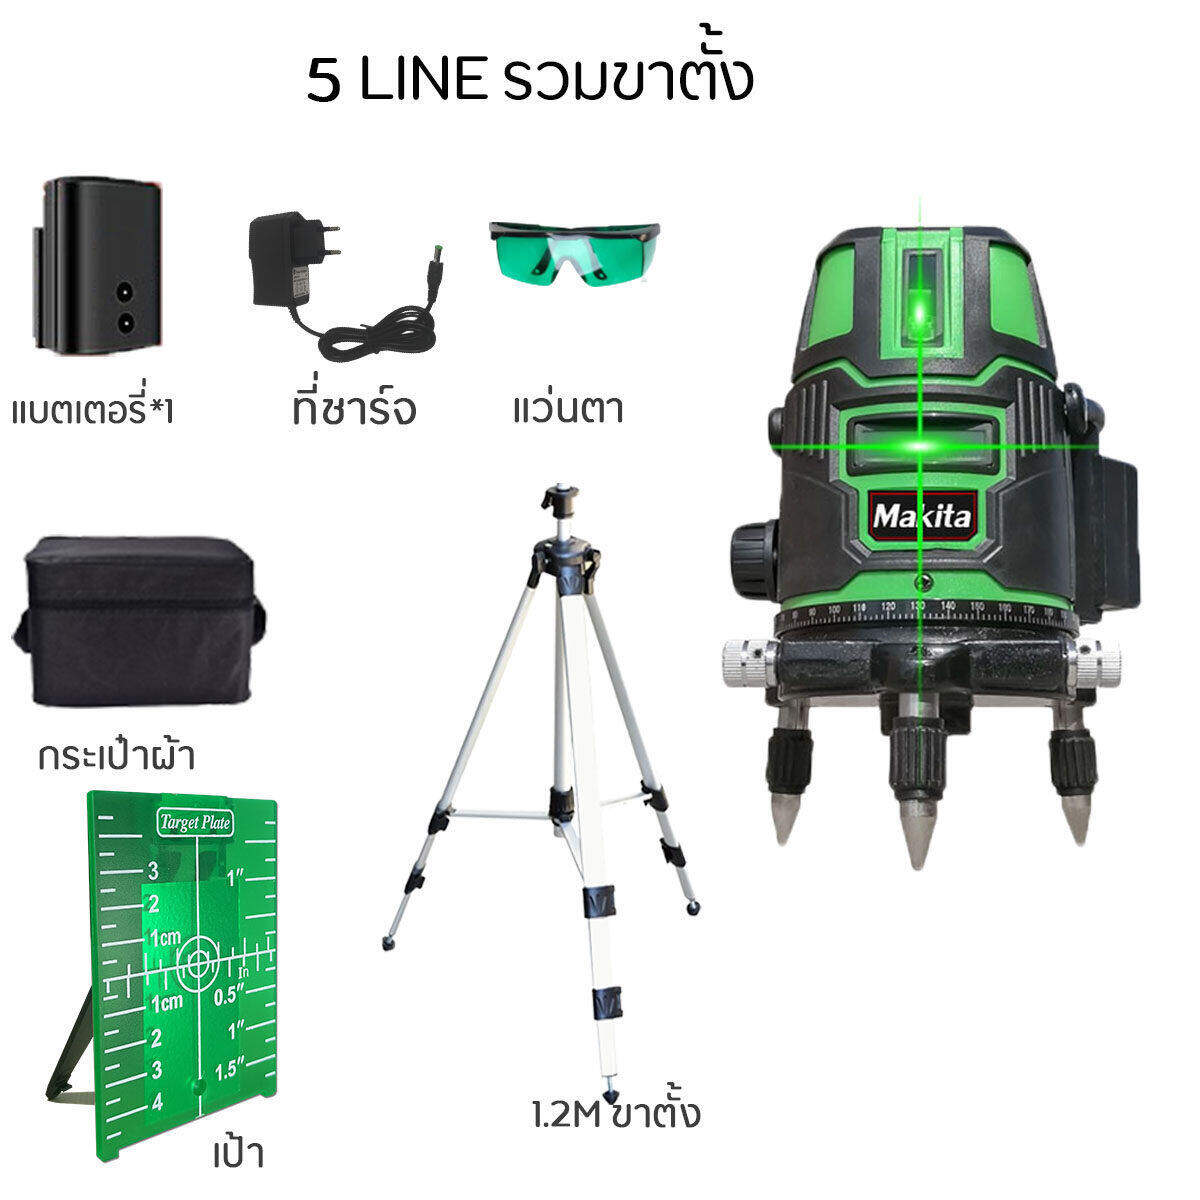 รายละเอียดเพิ่มเติมเกี่ยวกับ Makita【2/5/12 Lines Green Laser Level】แถม แว่นตา + กล่อง เครื่องวัดระดับเลเซอร์ เลเซอร์ 3 มิติ 12 แกน ระดับน้ำเลเซอร์ 360 องศา กล่องกันกระแทกอย่างดี